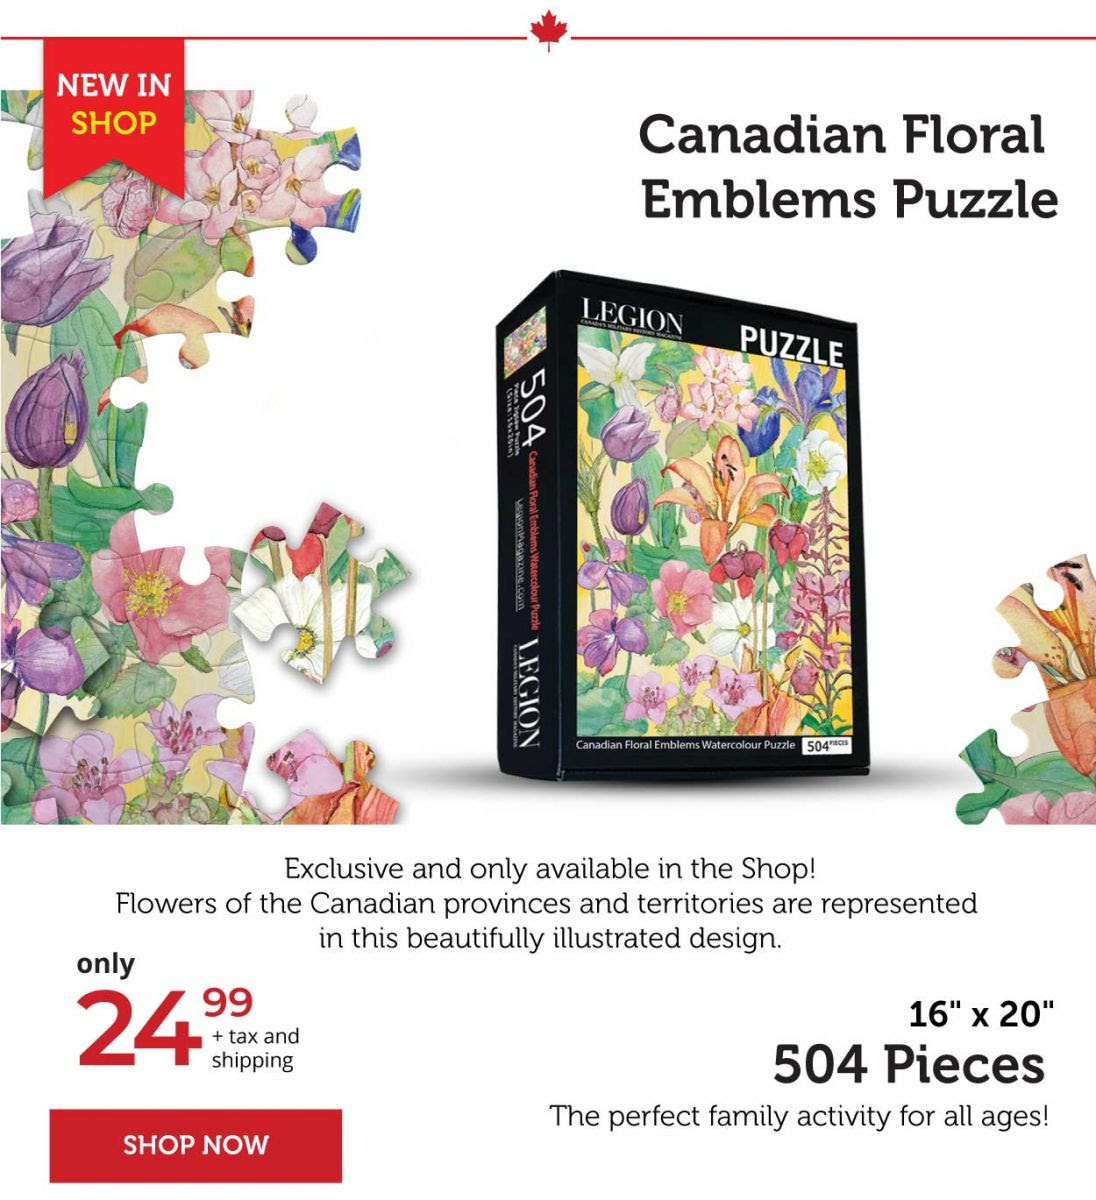 Canadian floral Emblems Puzzle